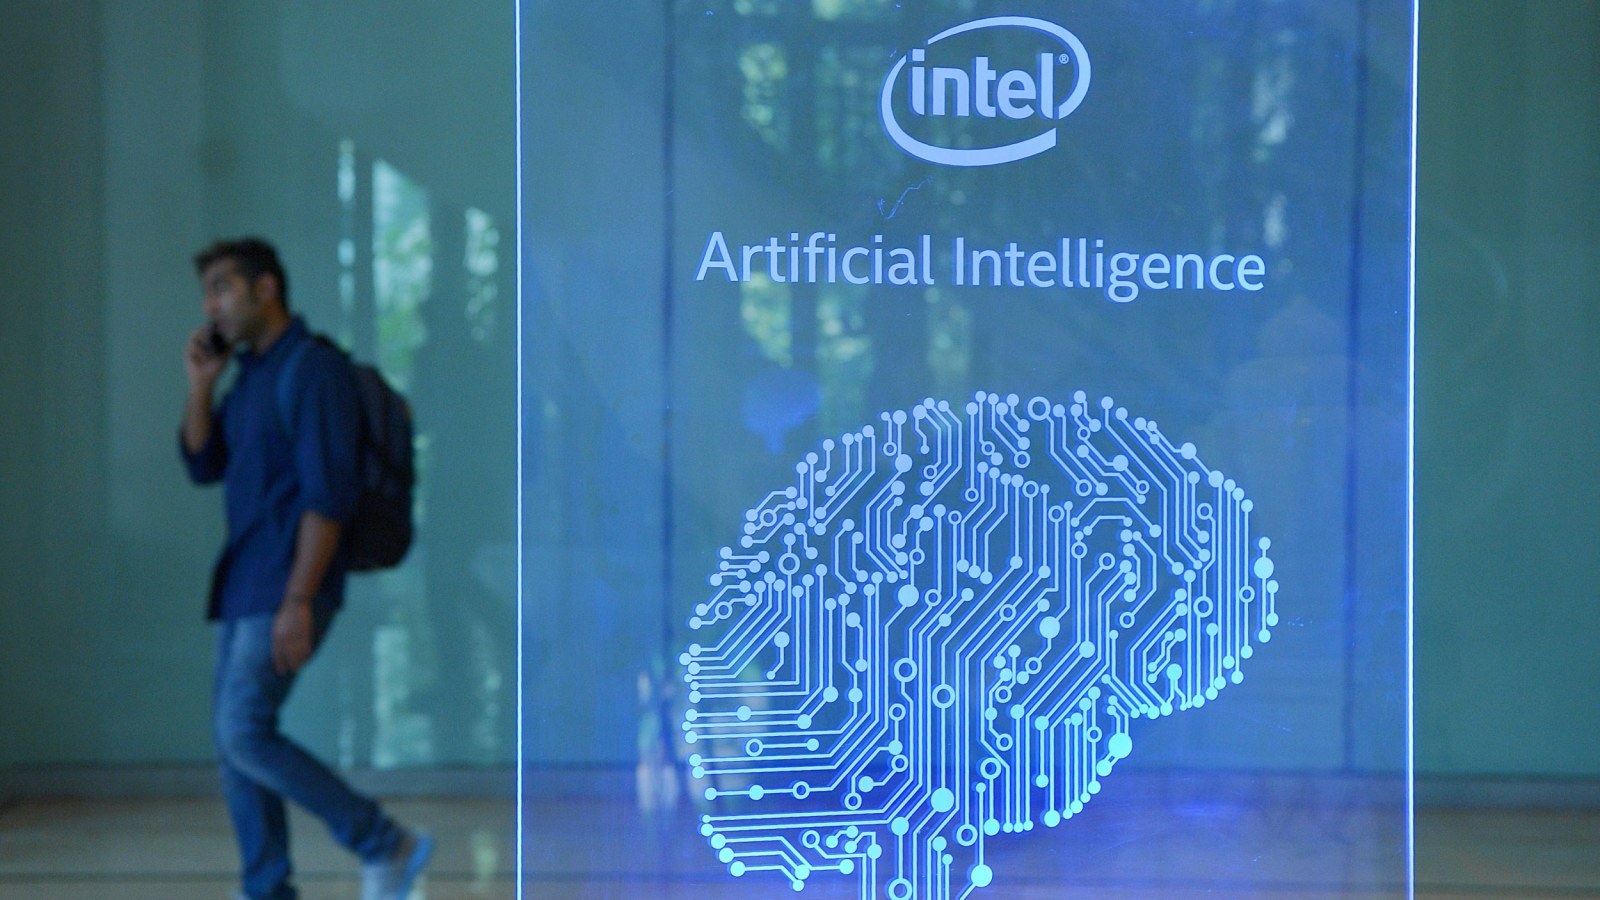 Интел работа. Технологические гиганты. Intel искусственного интеллекта. Интел искусственный интеллект картинка. Диджитал дом.